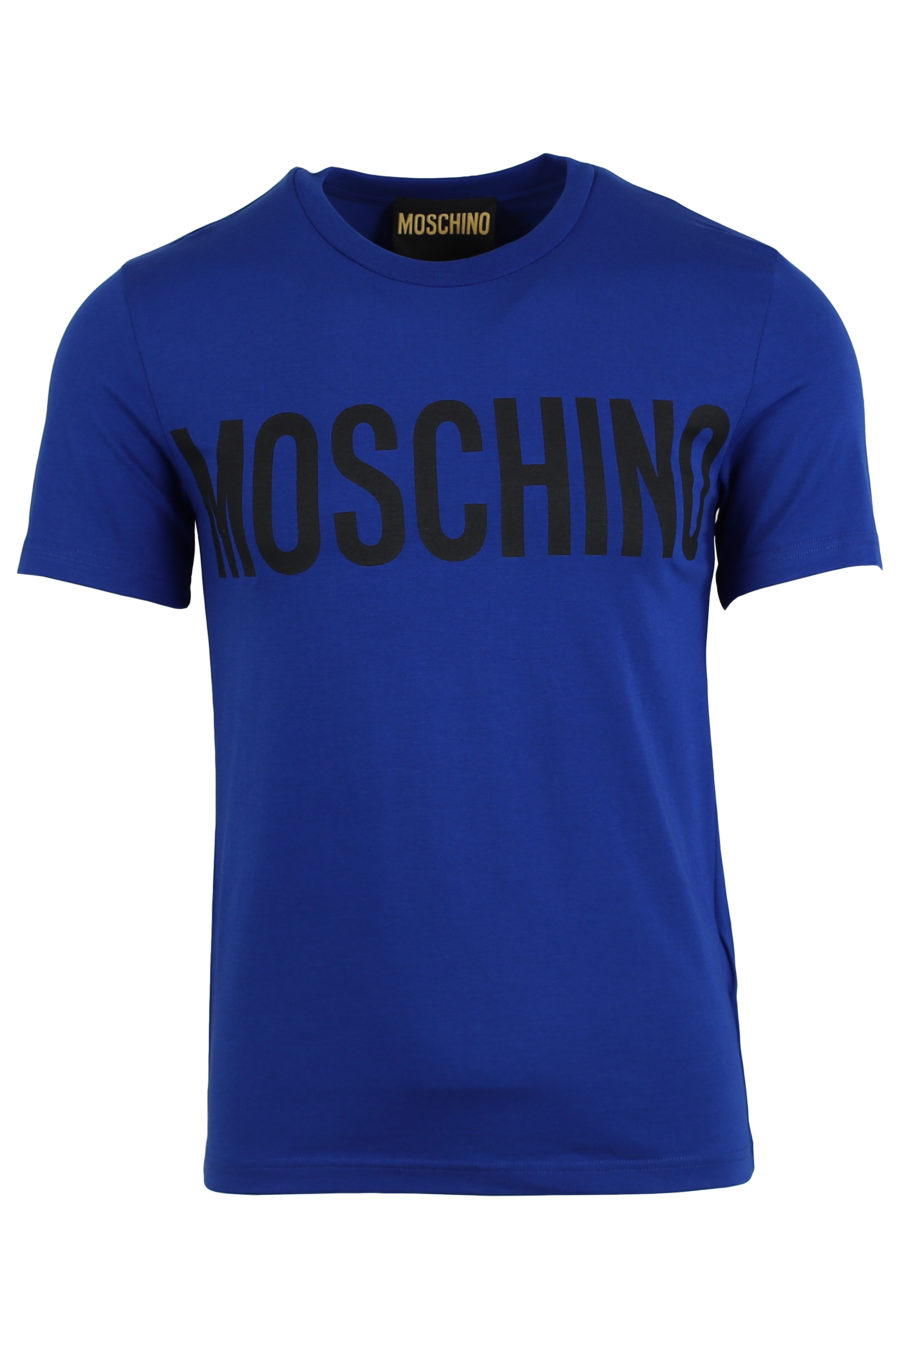 T-shirt blau großes Logo vorne - IMG 0915 copy